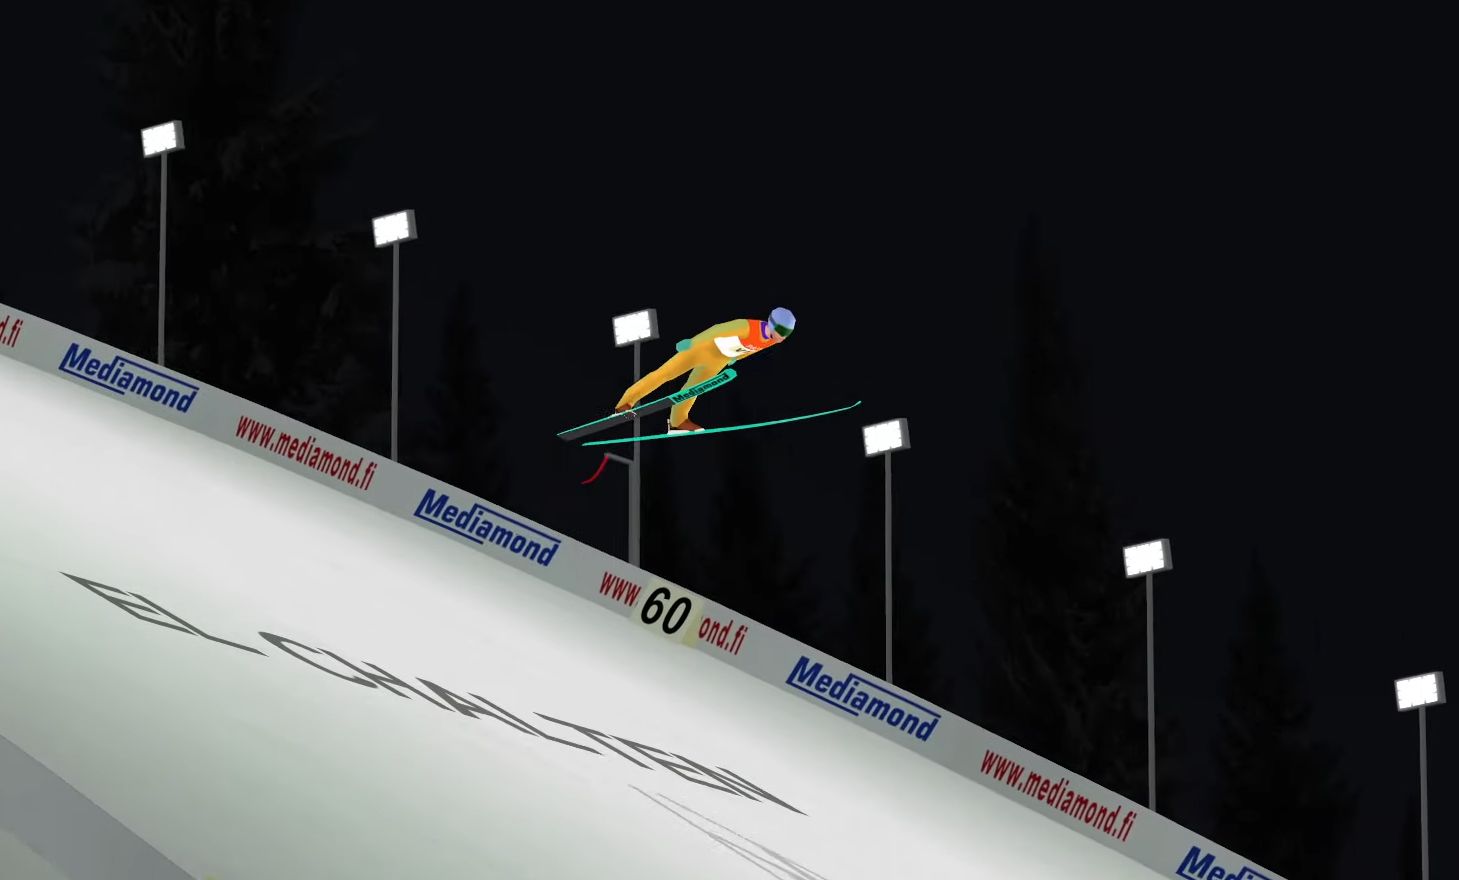 Deluxe Ski Jump 4 Nowa Wersja Legendarnej Gry Pozwoli Na Budowanie Wlasnych Skoczni